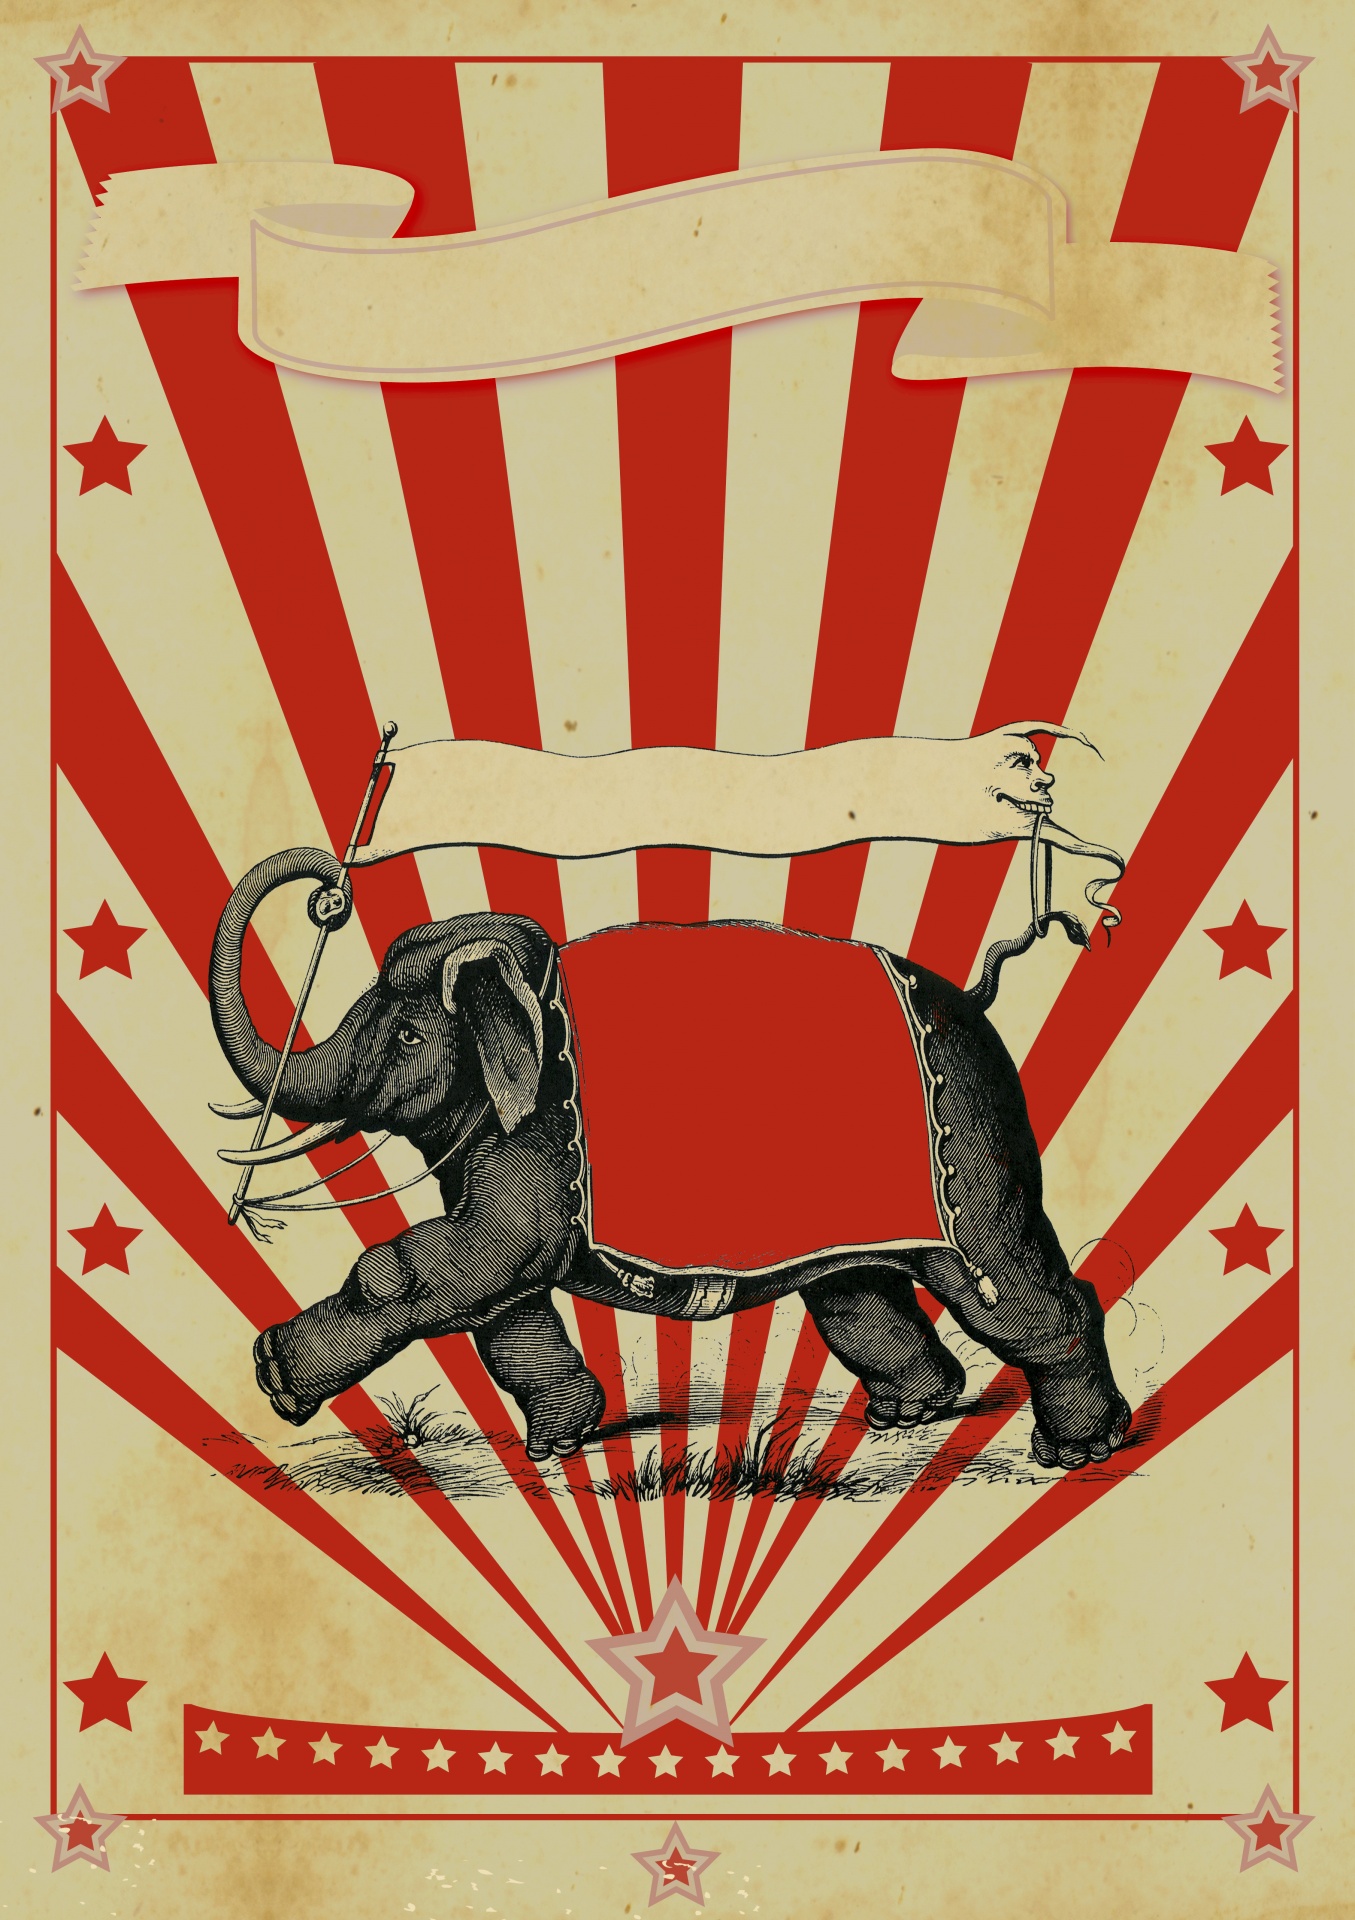 Cyrkowy słoń rocznika plakat